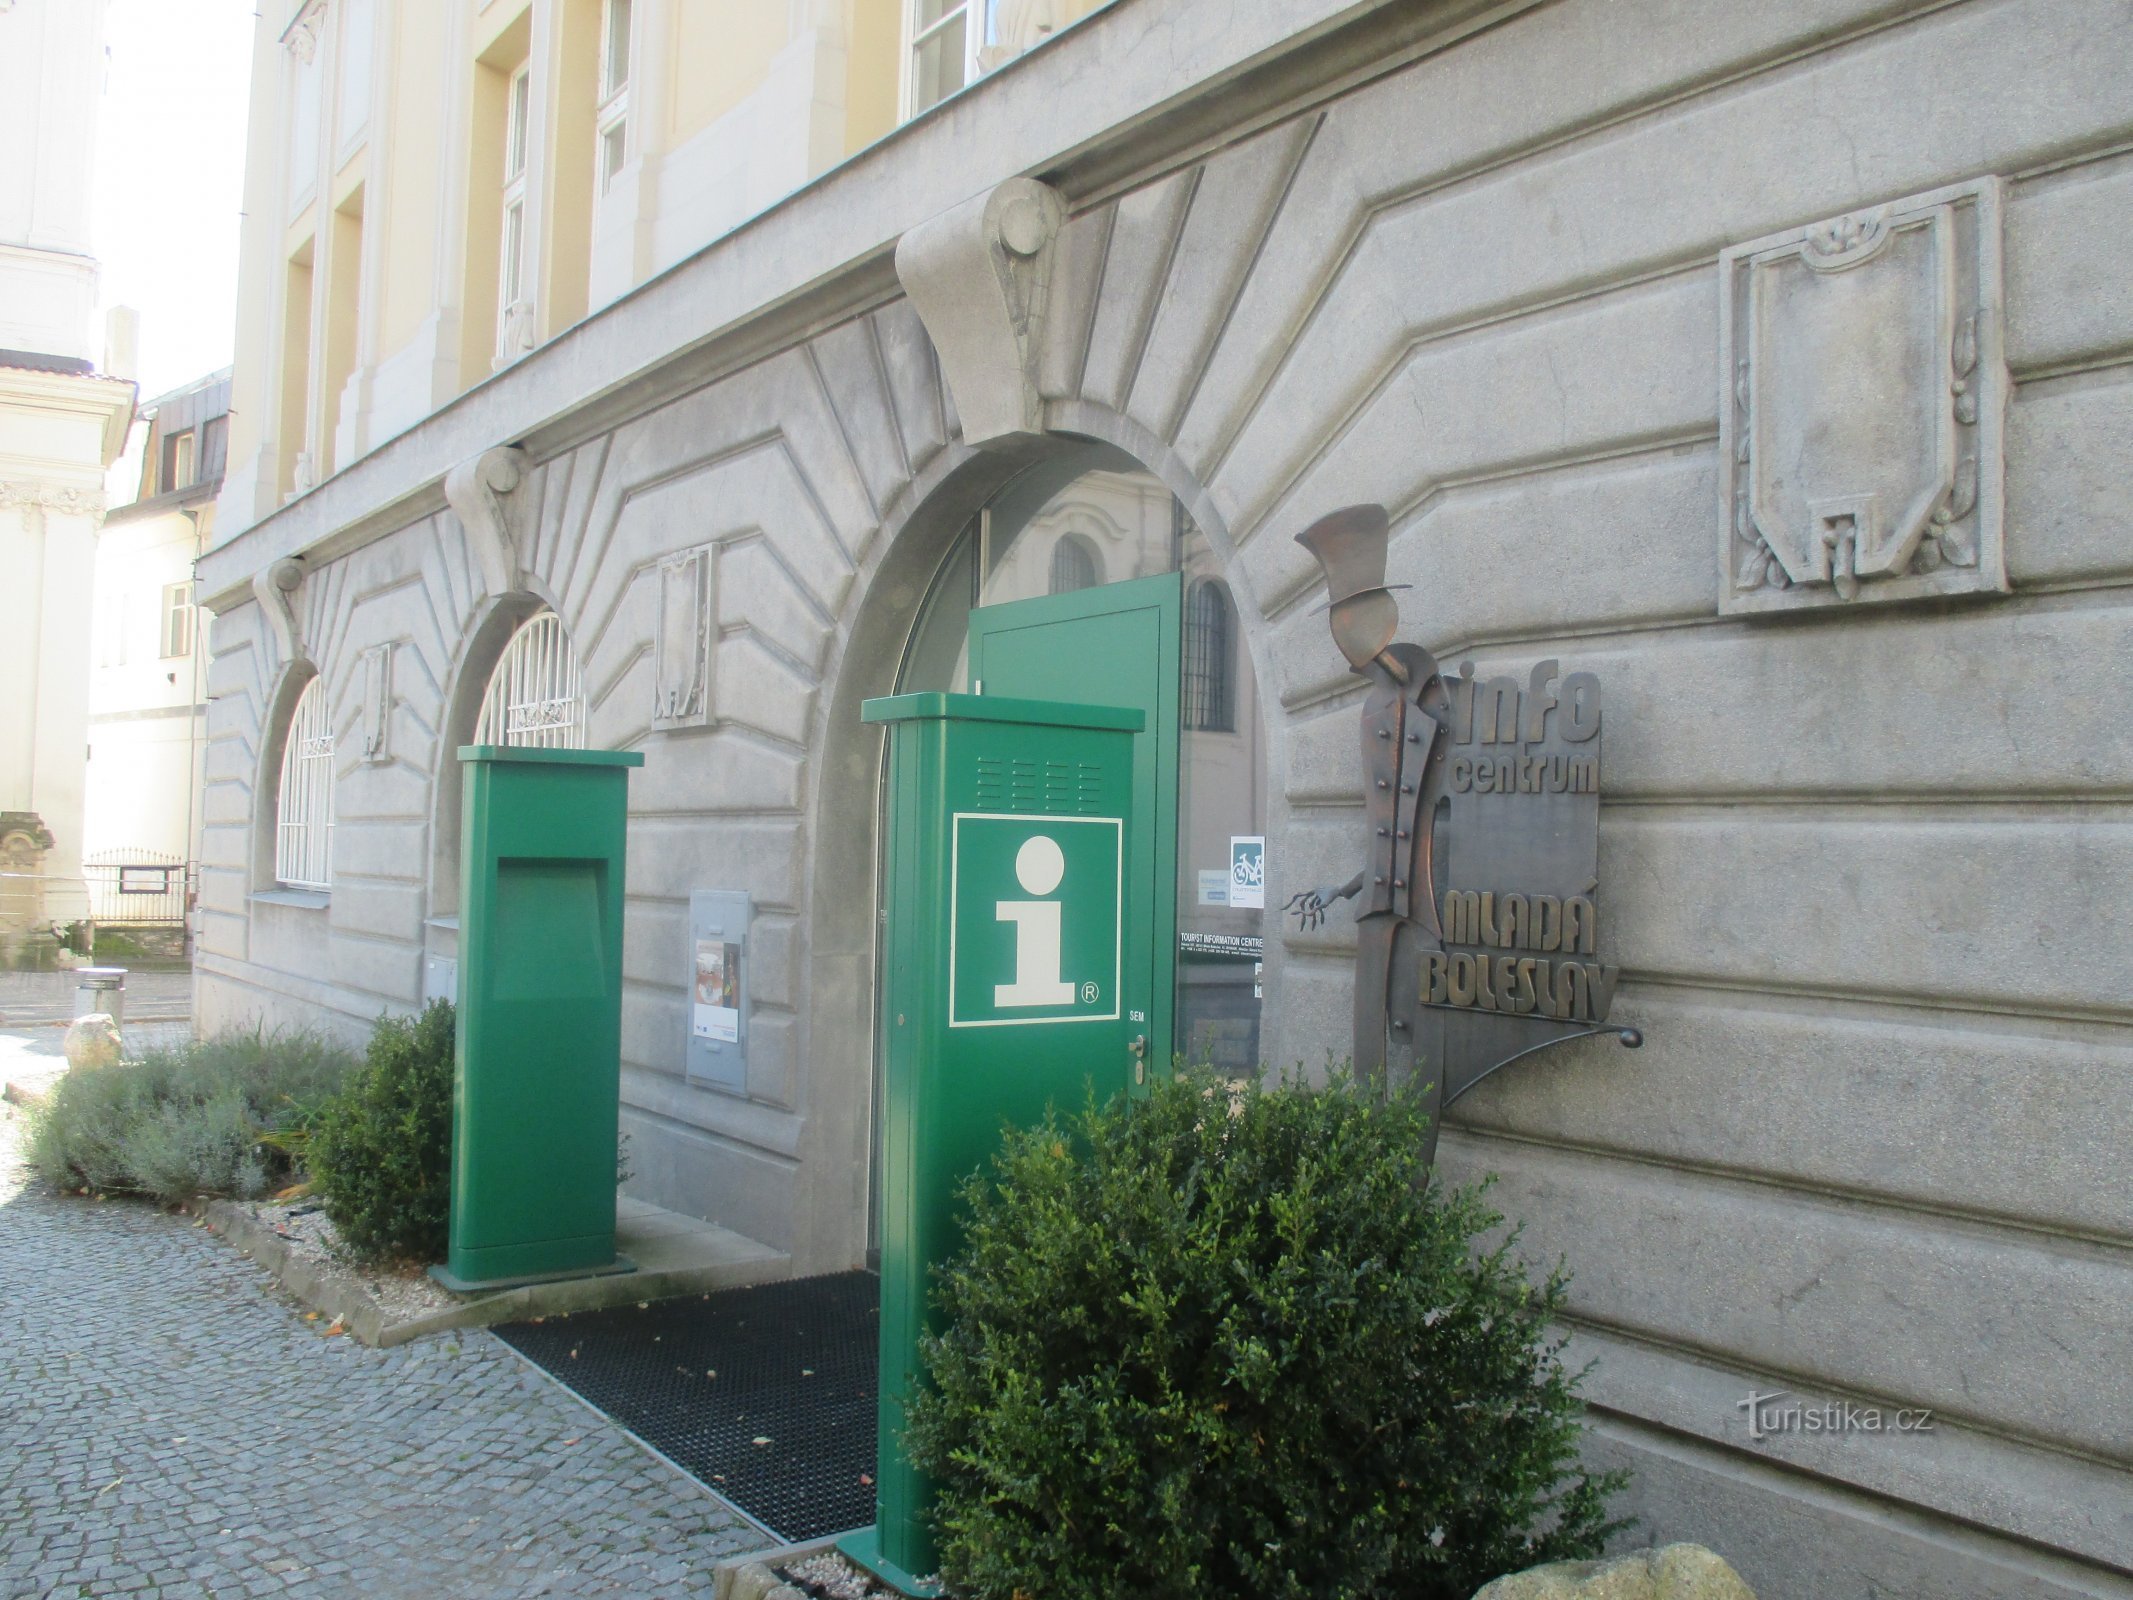 Mladá Boleslav - Információs központ